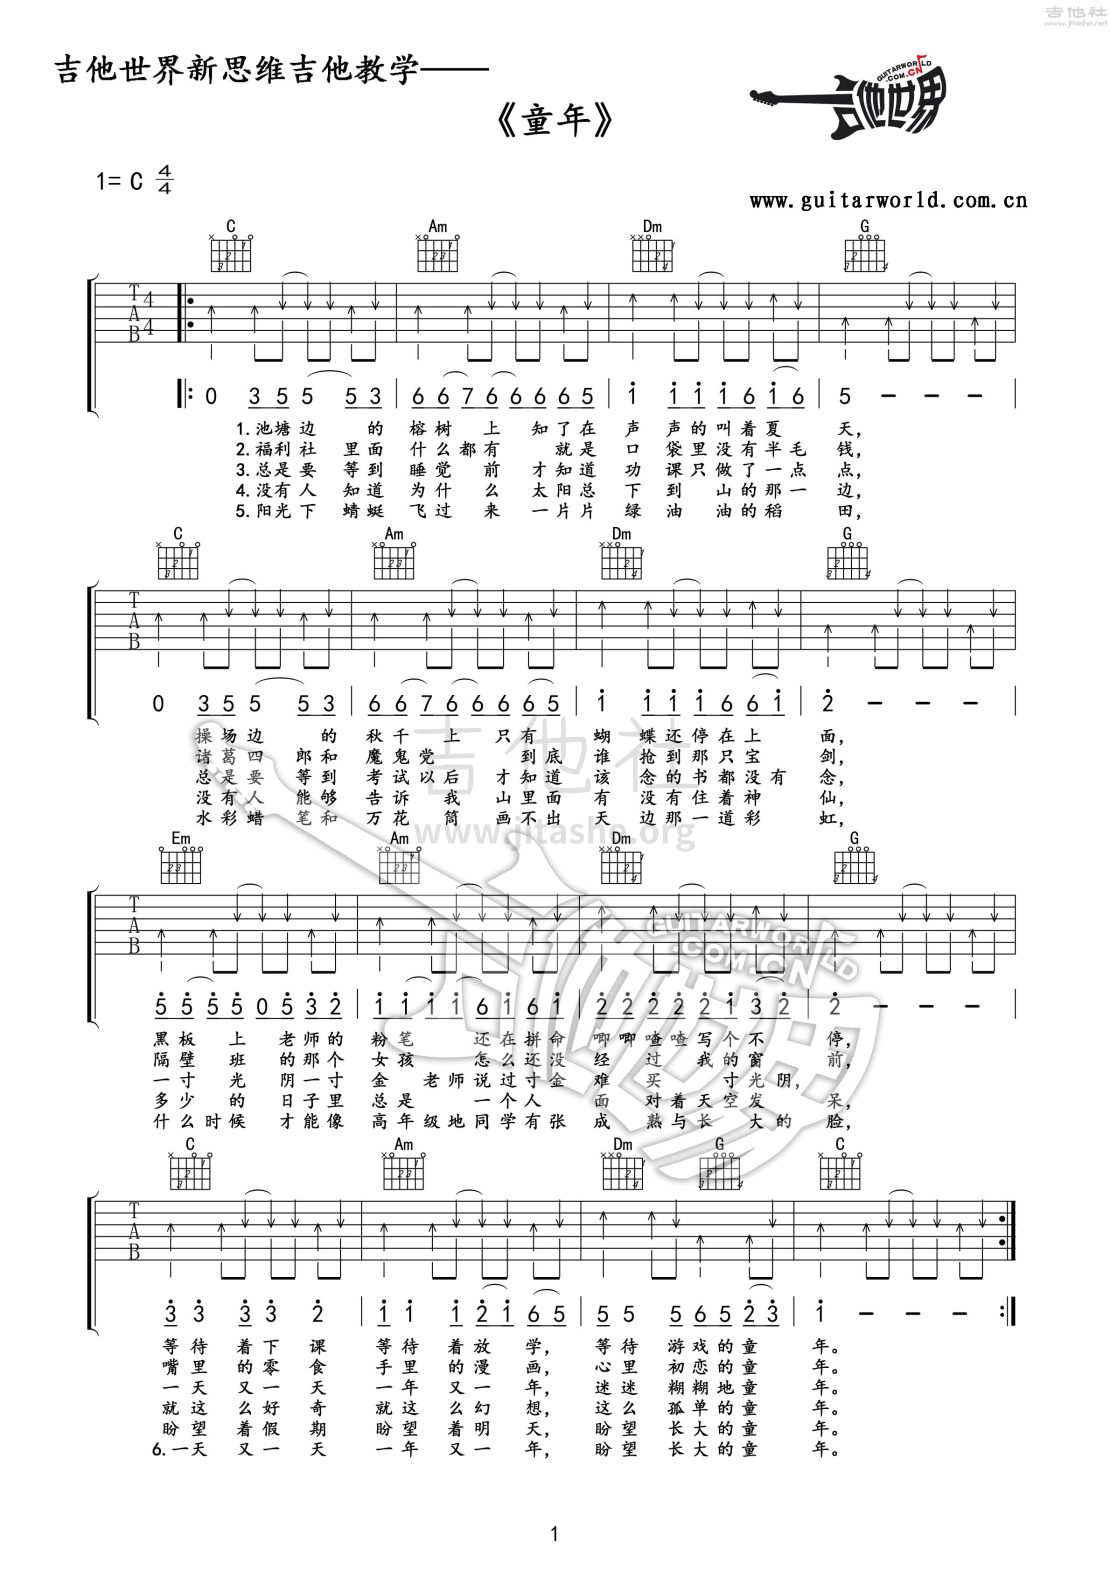 打印:童年吉他谱_罗大佑_06 童年-扫弦节奏2-教学专用谱.jpg